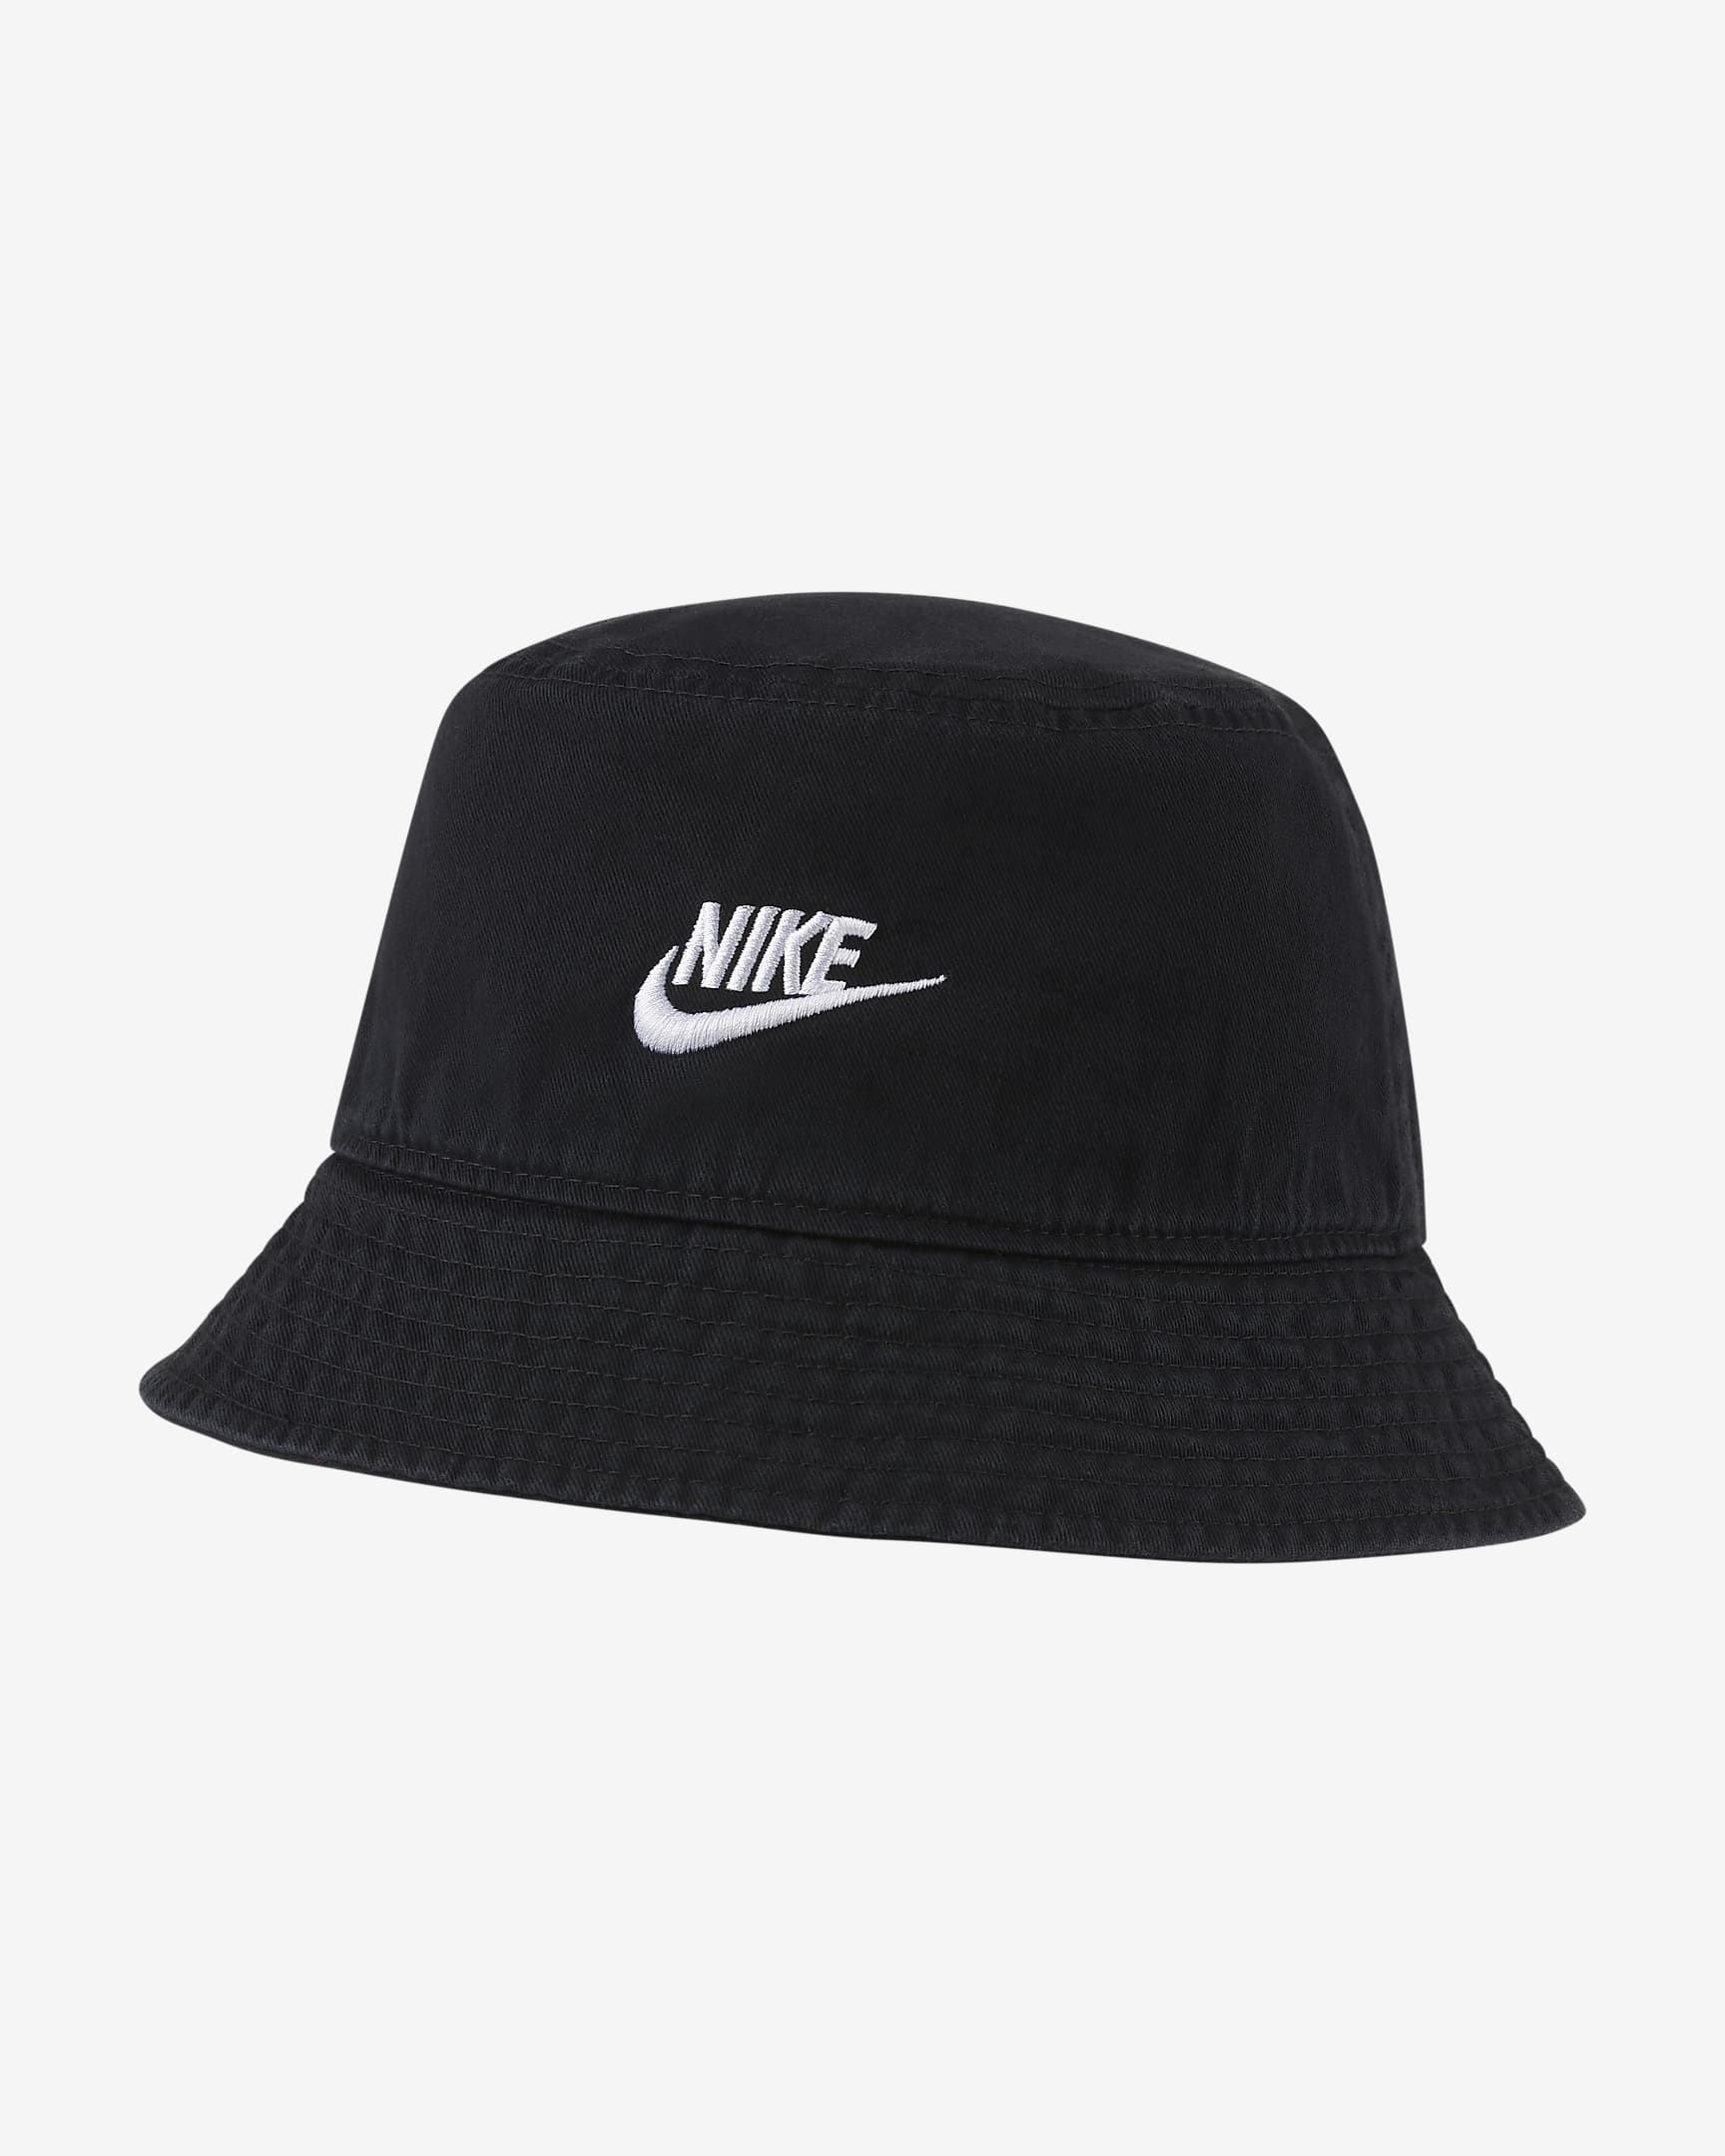 Nike Sportswear Bucket Hat Black – Stencil